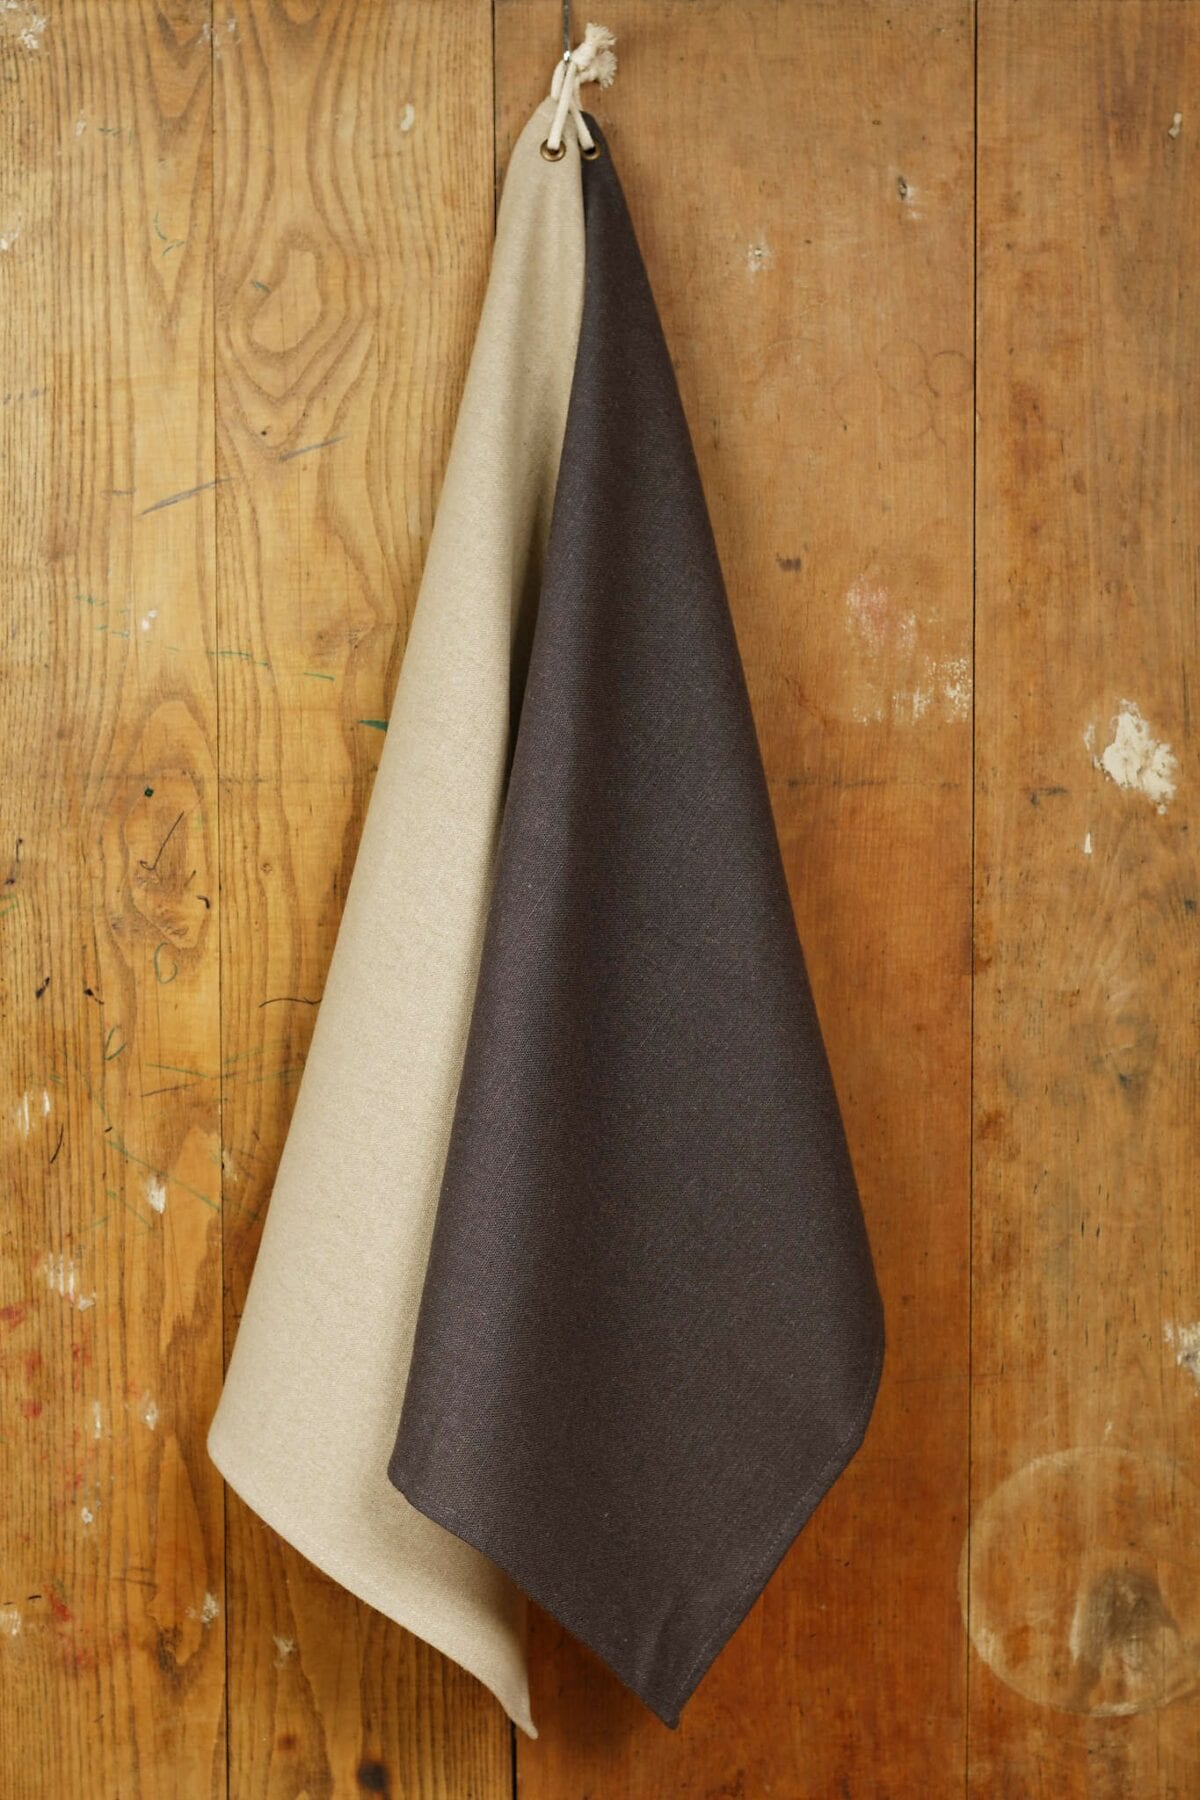 Konyhai törlőkendő lenvászonból, black&natur, 2 darab a csomagban